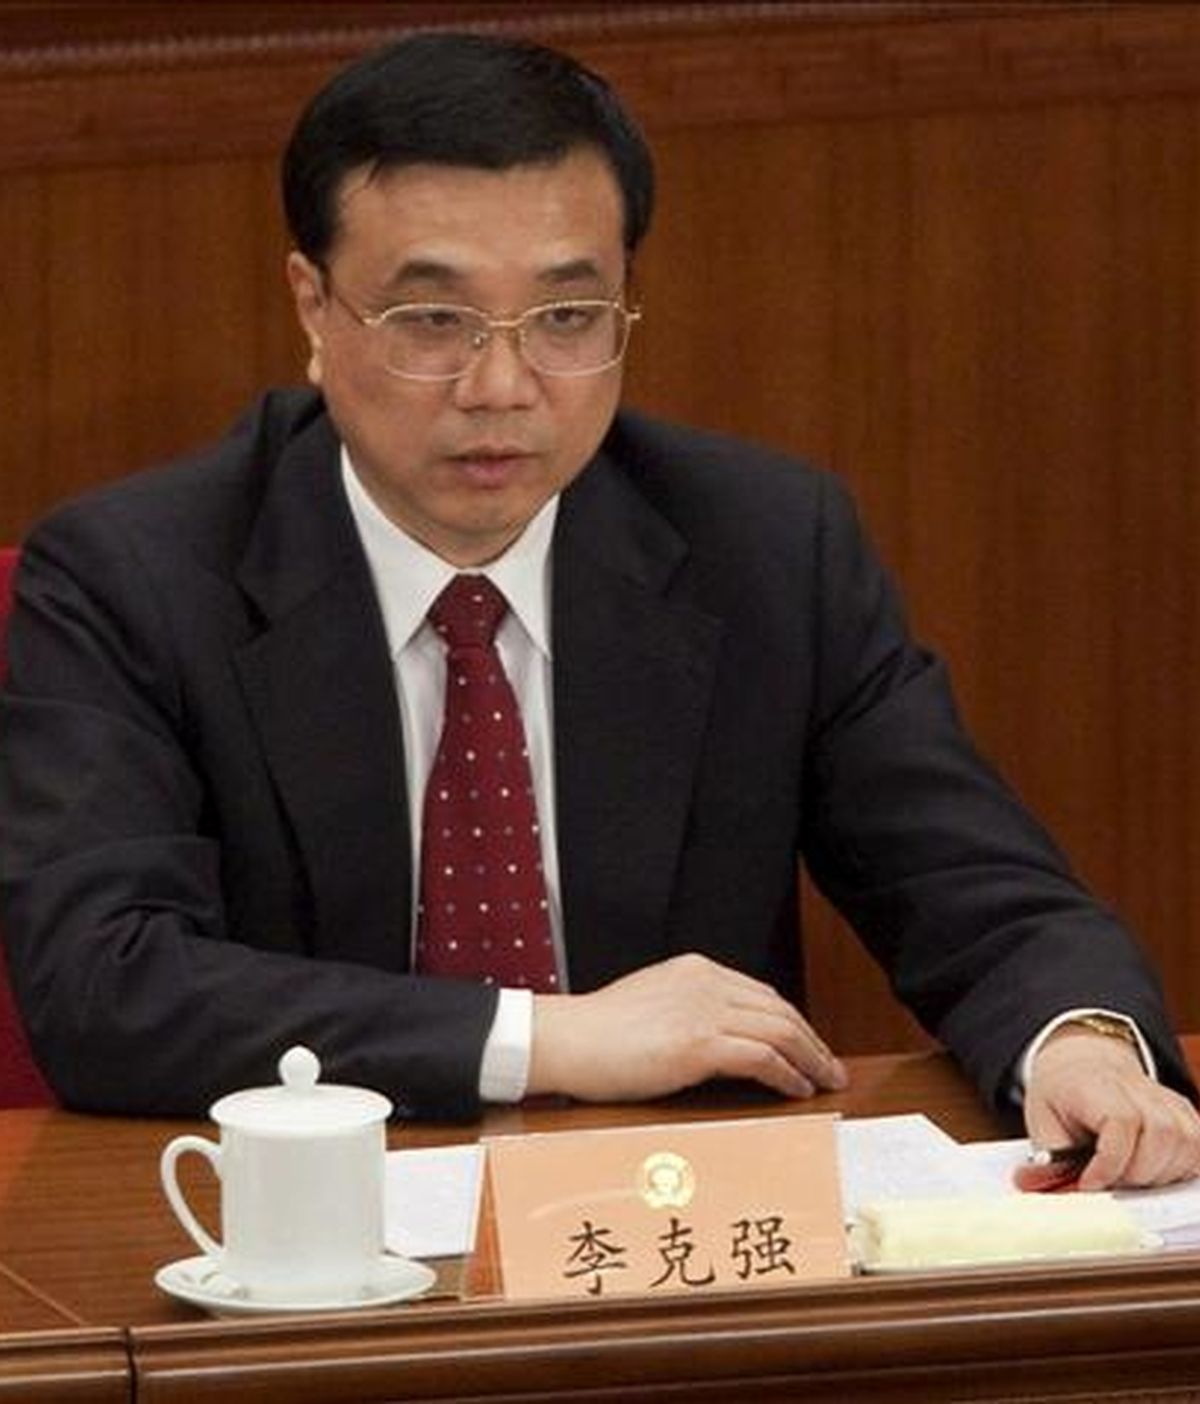 El vice primer ministro ejecutivo, Li Keqiang, en una foto de archivo del 12 de marzo pasado. Li Keqiang estuvo hoy presente en el inicio de la construcción de los reactores nucleares chinos. EFE/Archivo